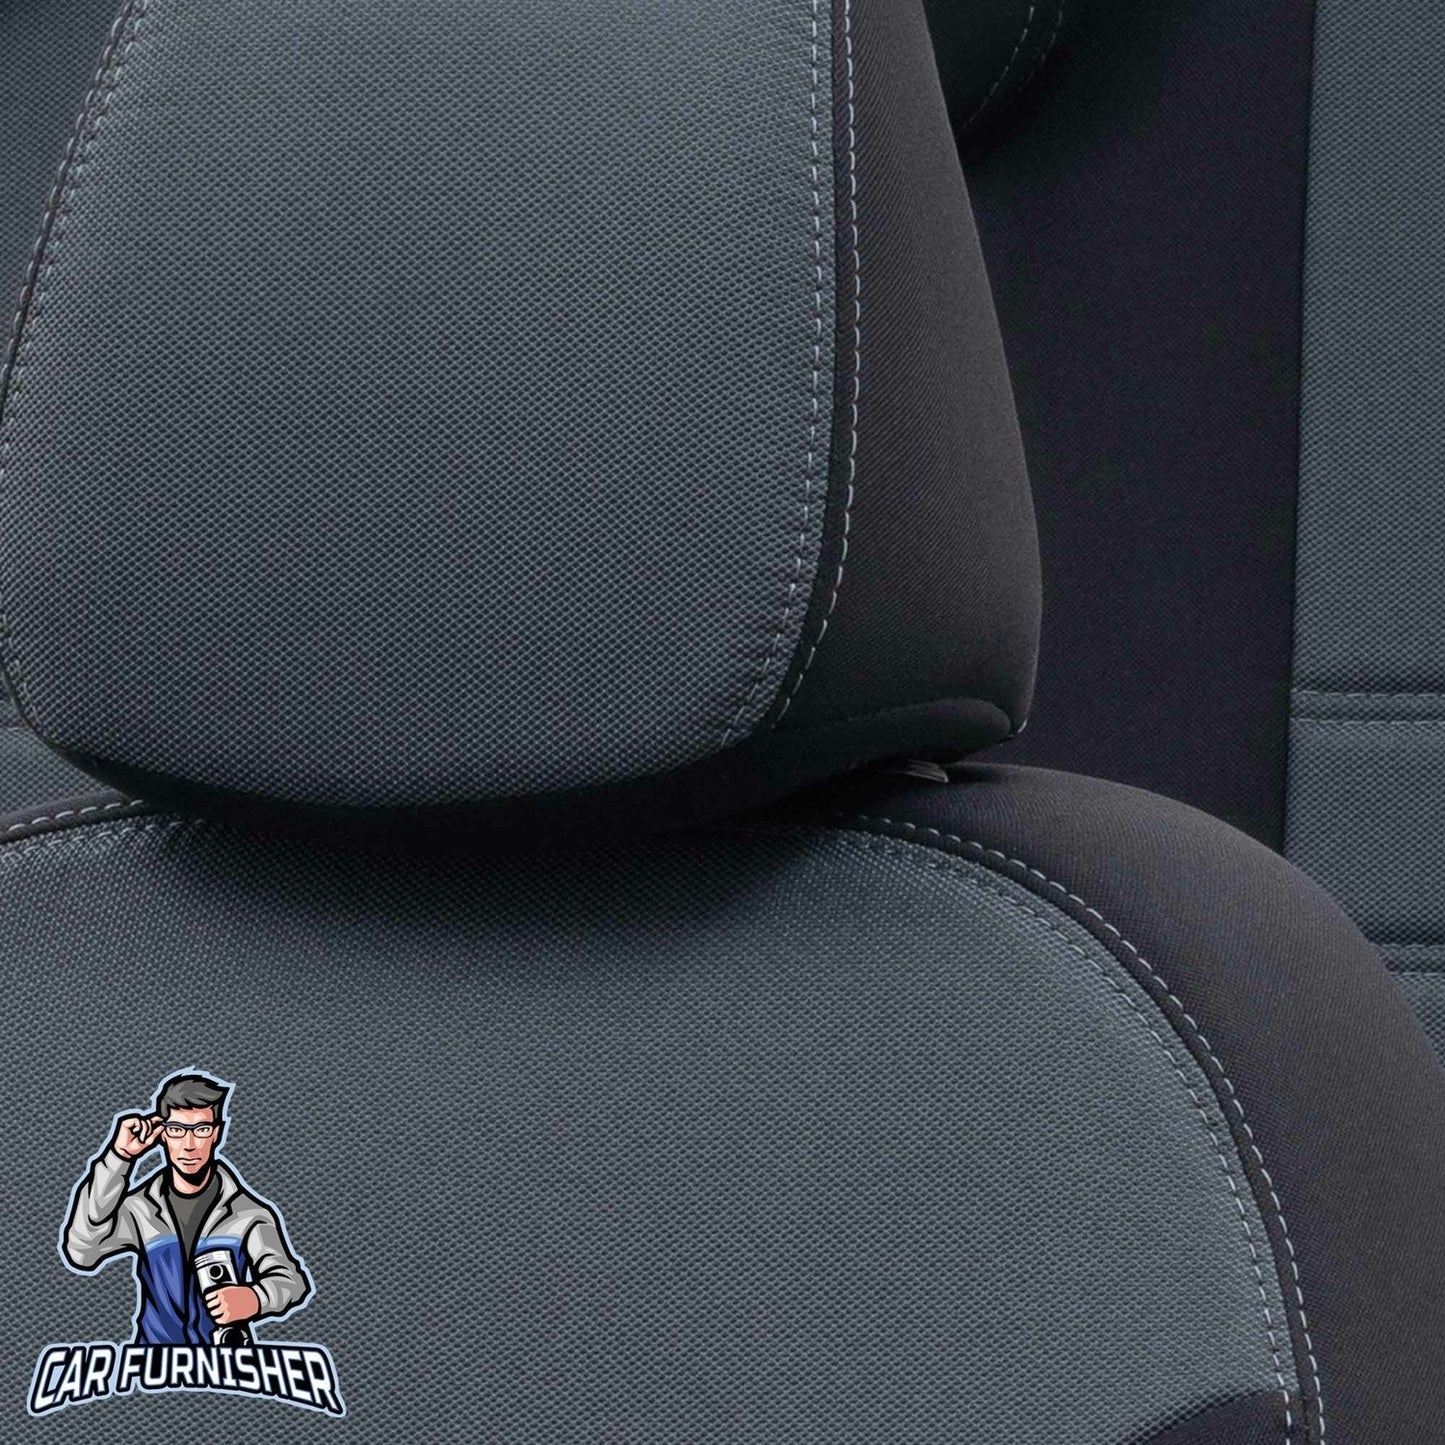 Suzuki Alto Seat Covers Original Jacquard Design Smoked Black Jacquard Fabric